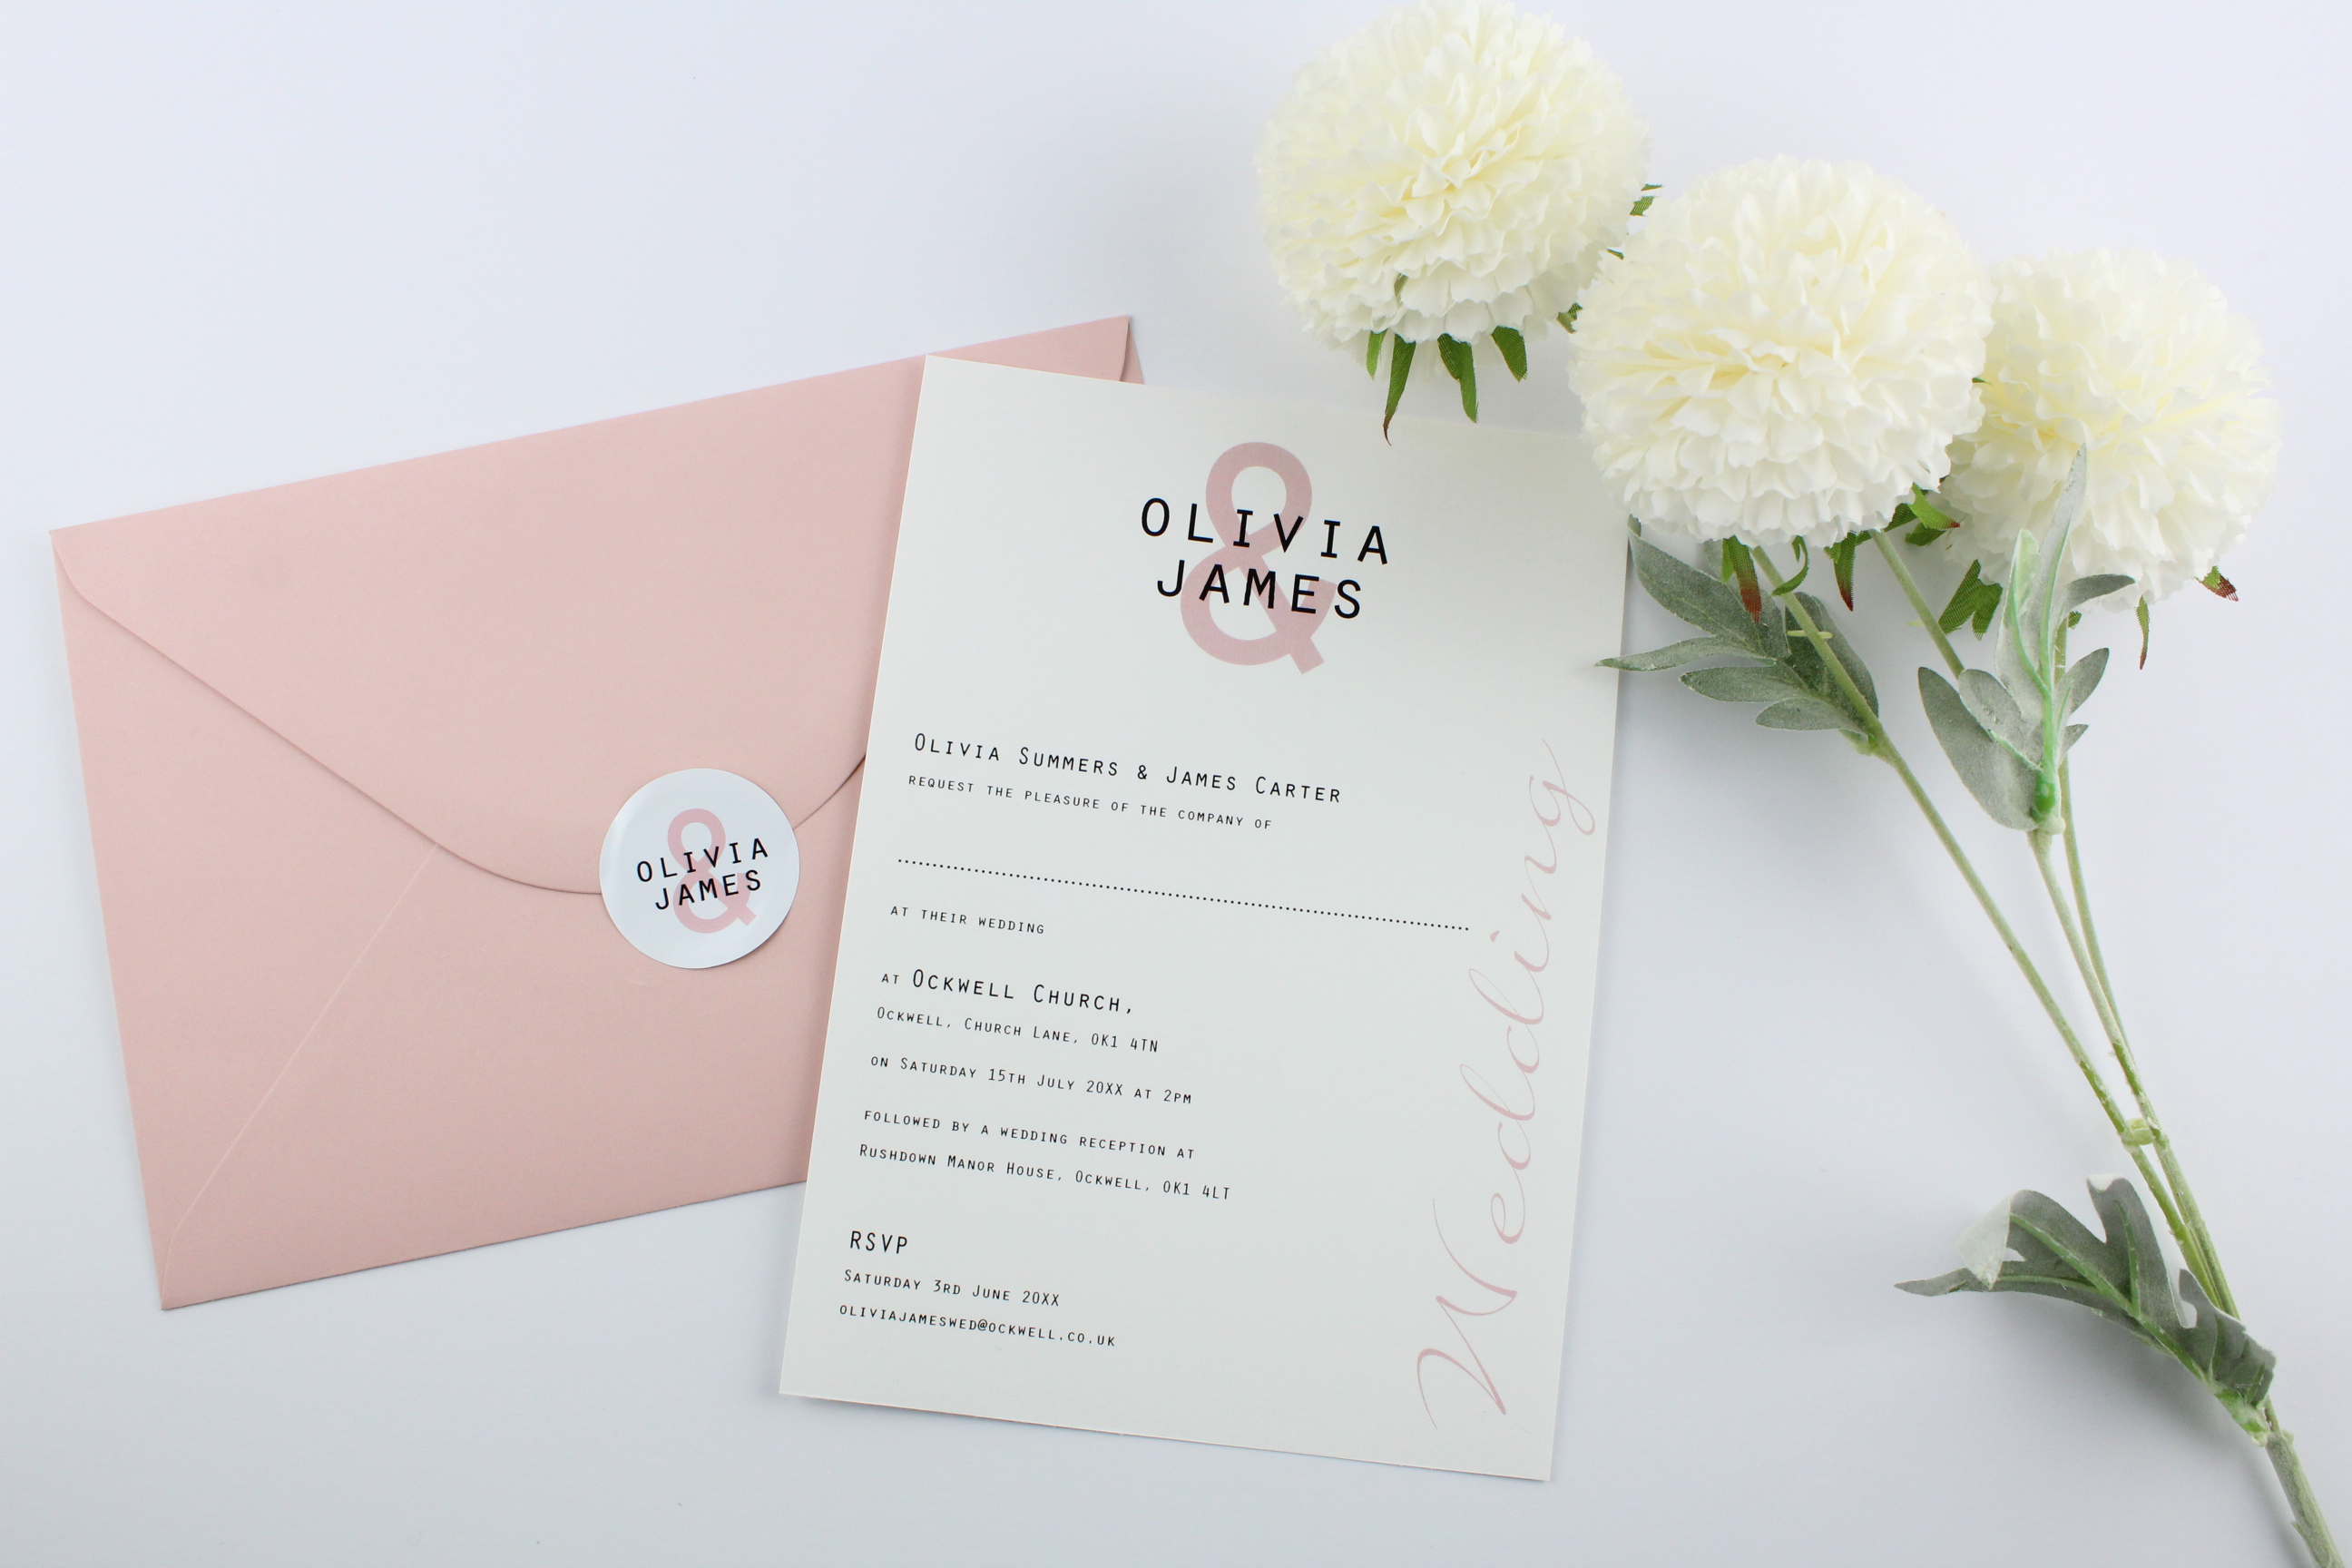 Minimalist wedding invitations